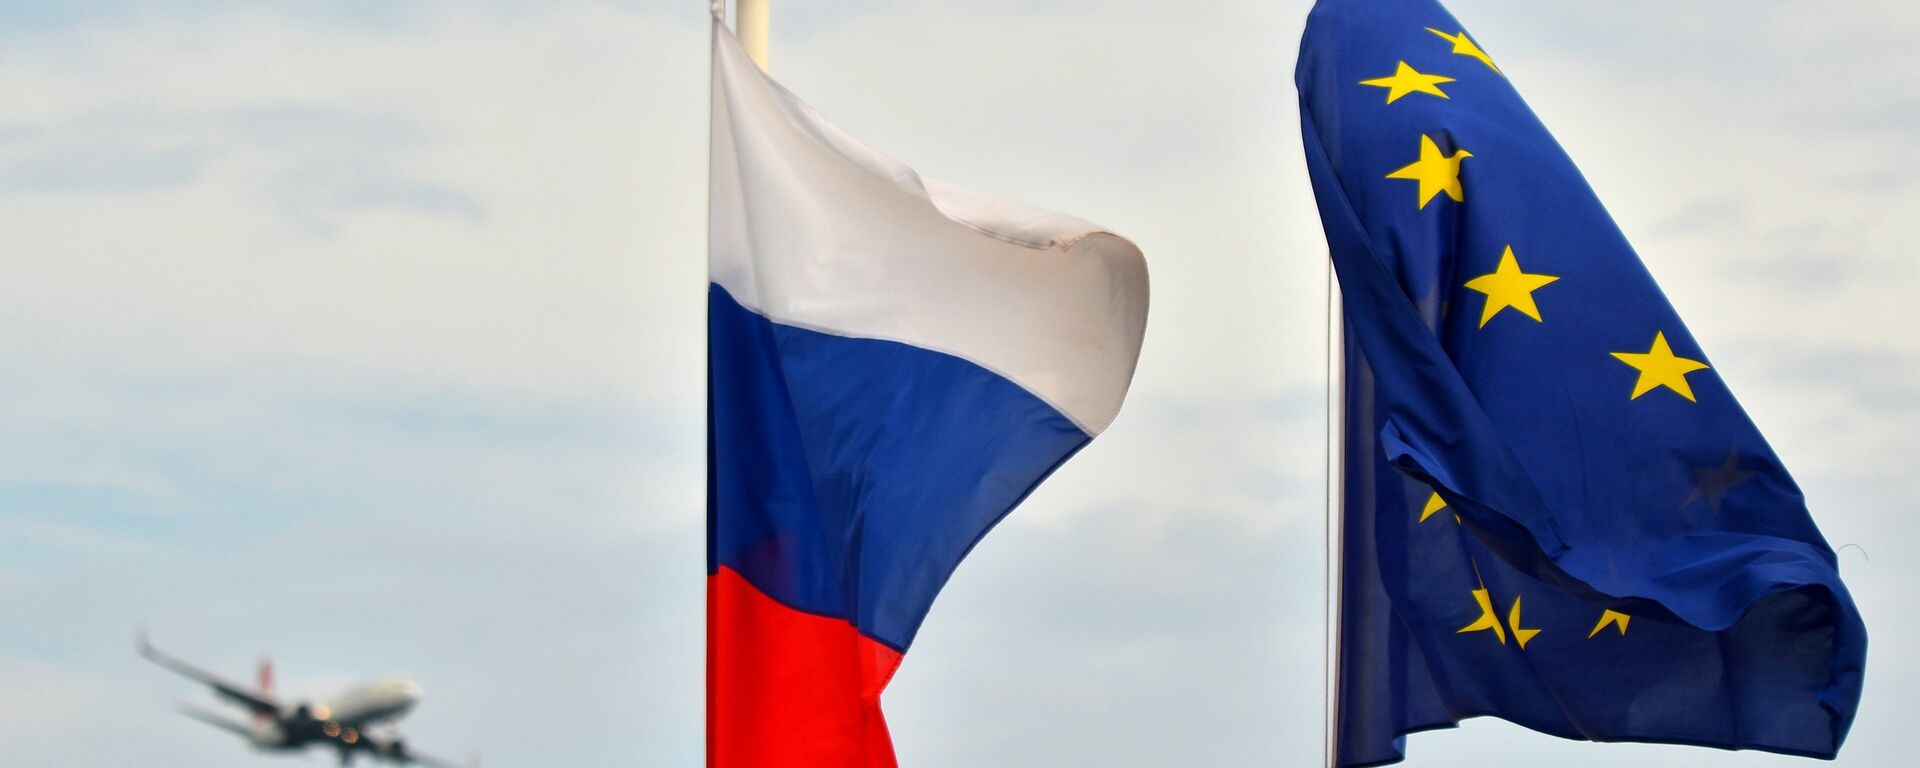 Ռուսաստանը ԵԽԽՎ-ի կողմից պաշտոնապես ճանաչվեց որպես «ահաբեկչական ռեժիմ»